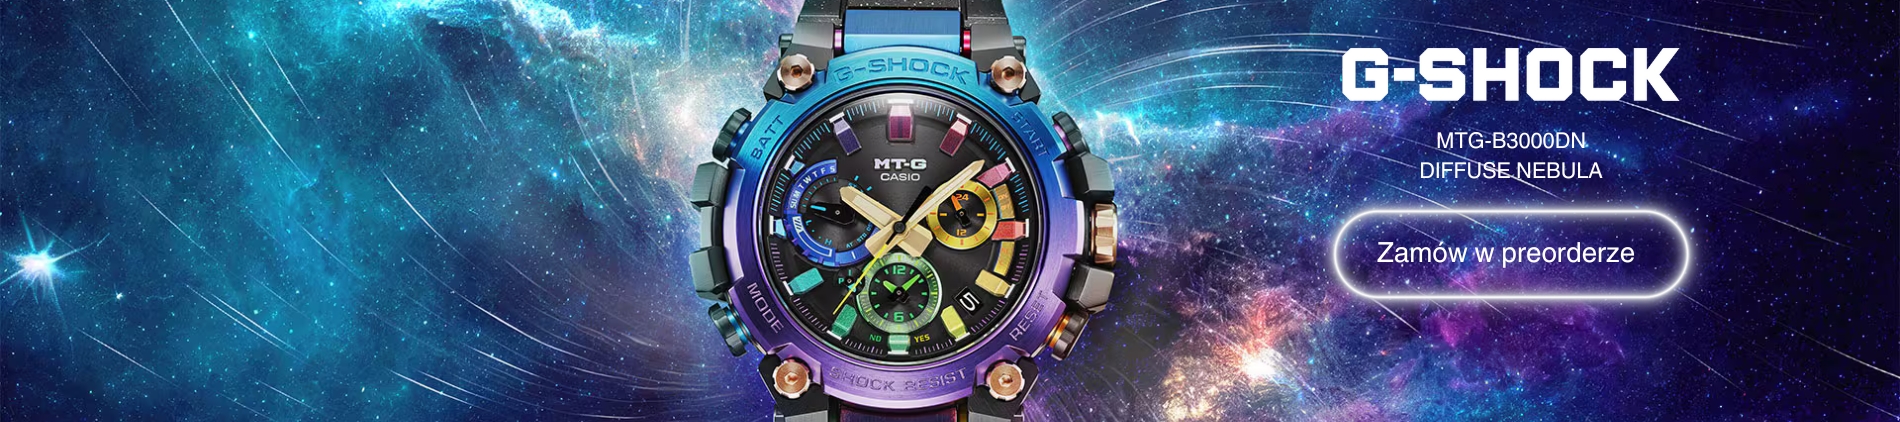 Specjalna edycja limitowana zegarka G-Shock x League of Legends! Sprawdź w Time Trend!